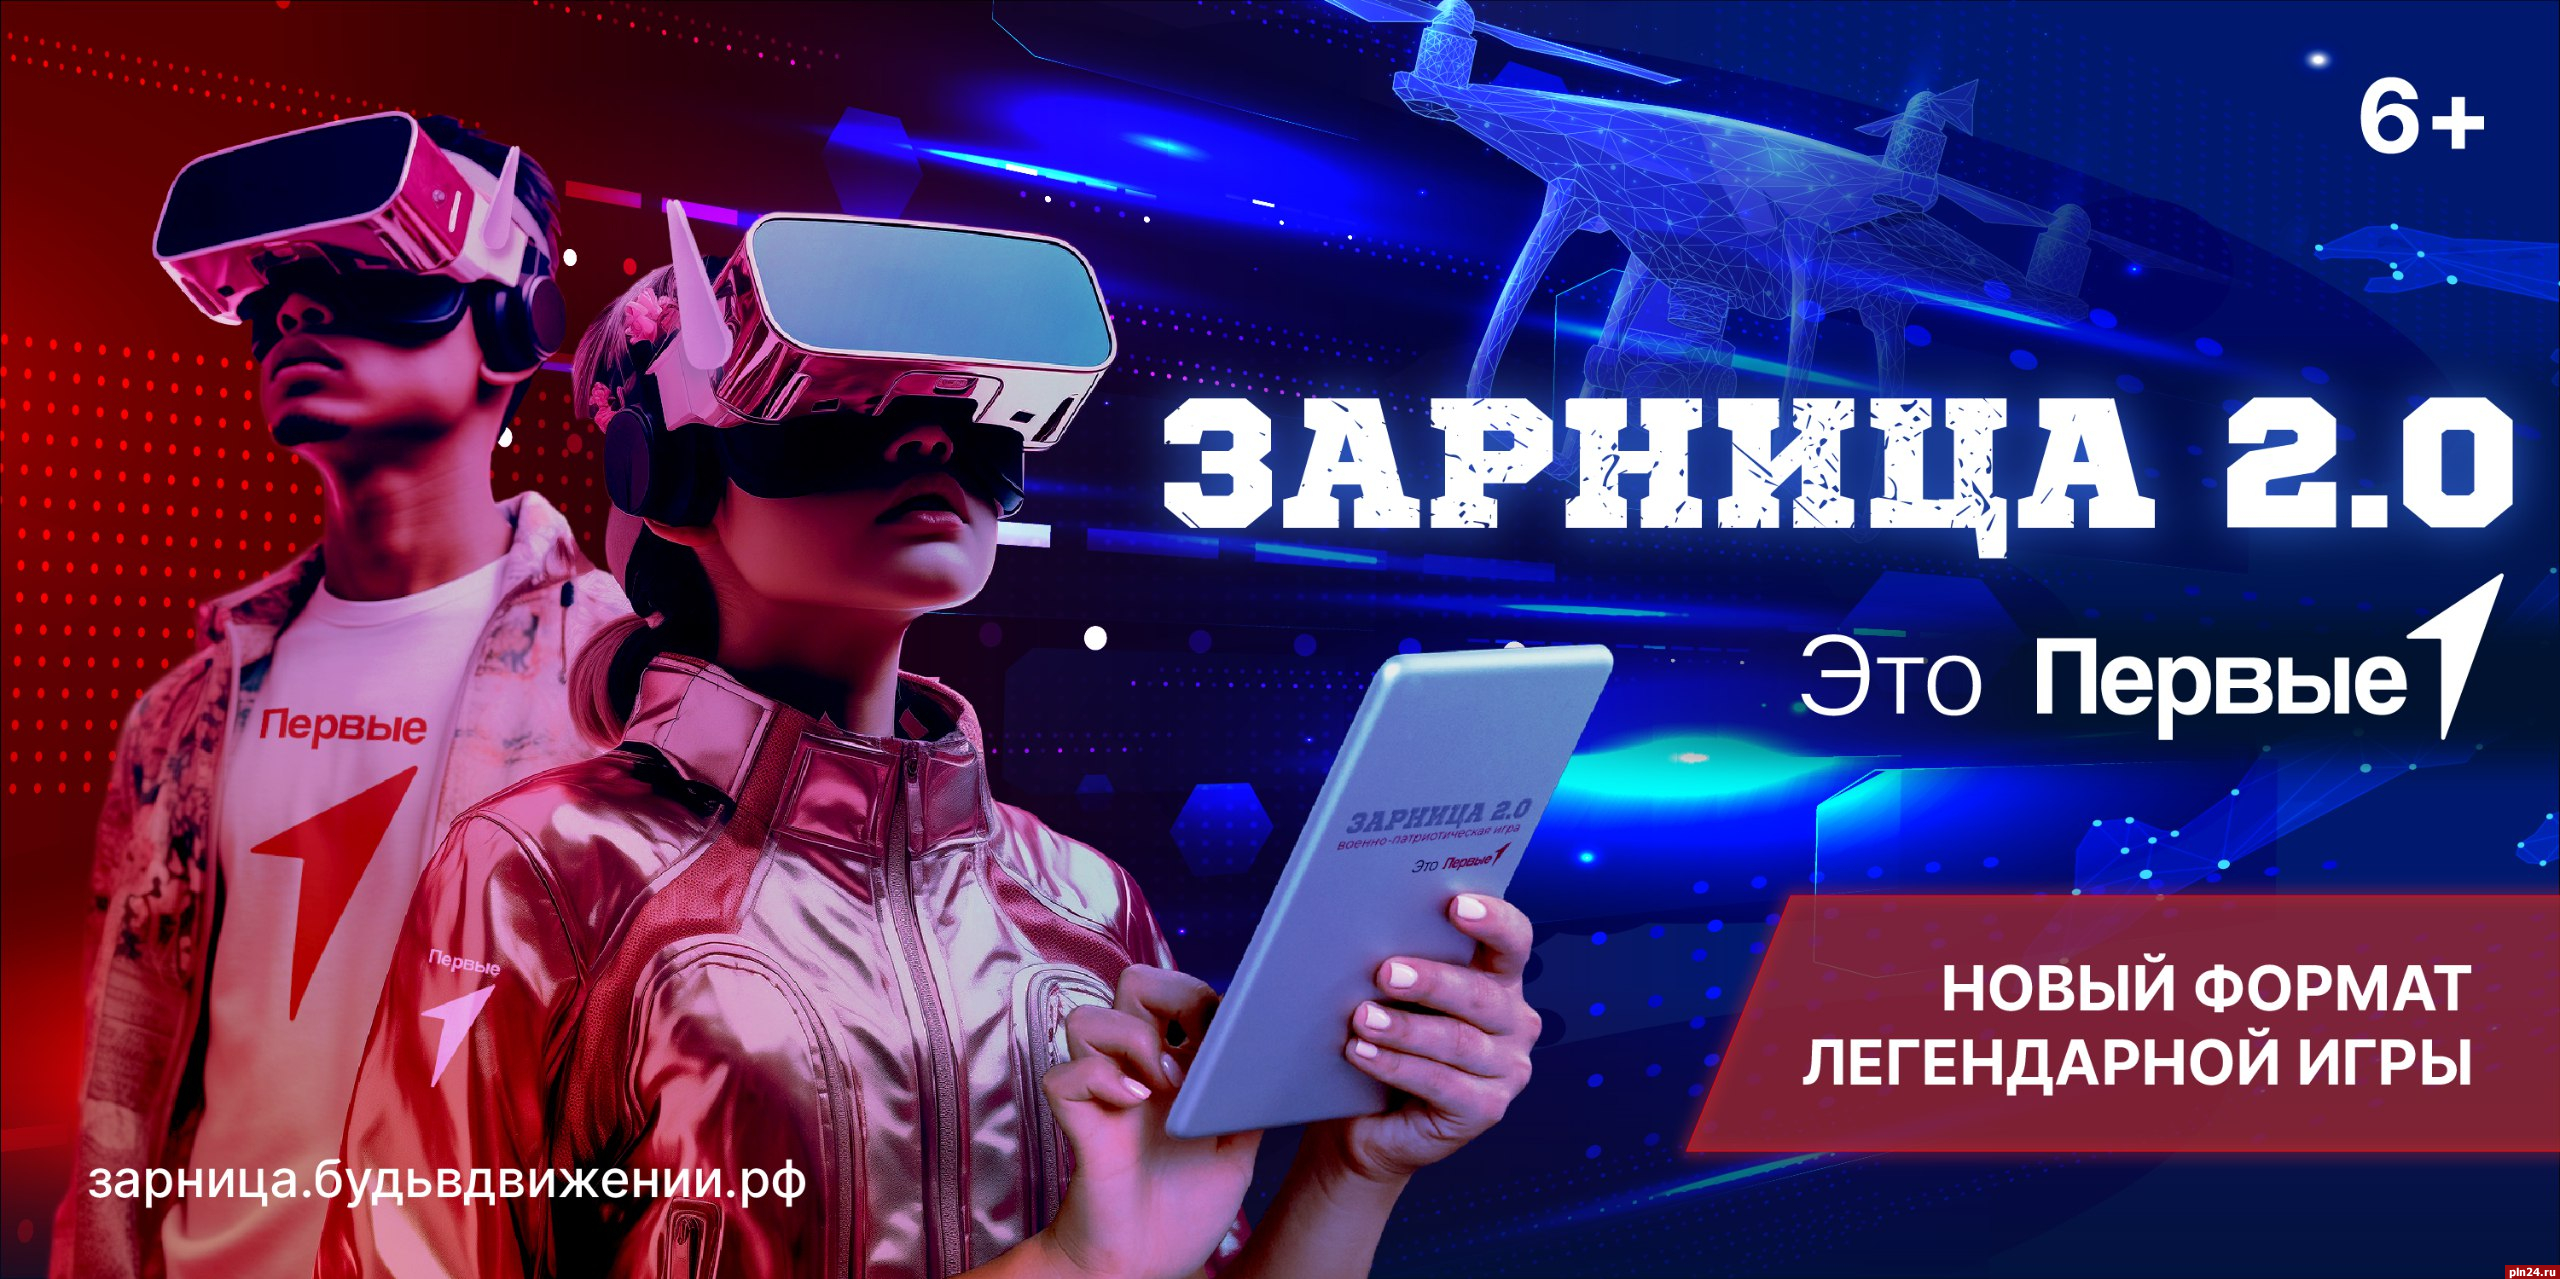 Более тысячи школьников Псковской области подали заявки на проект «Зарница 2.0»